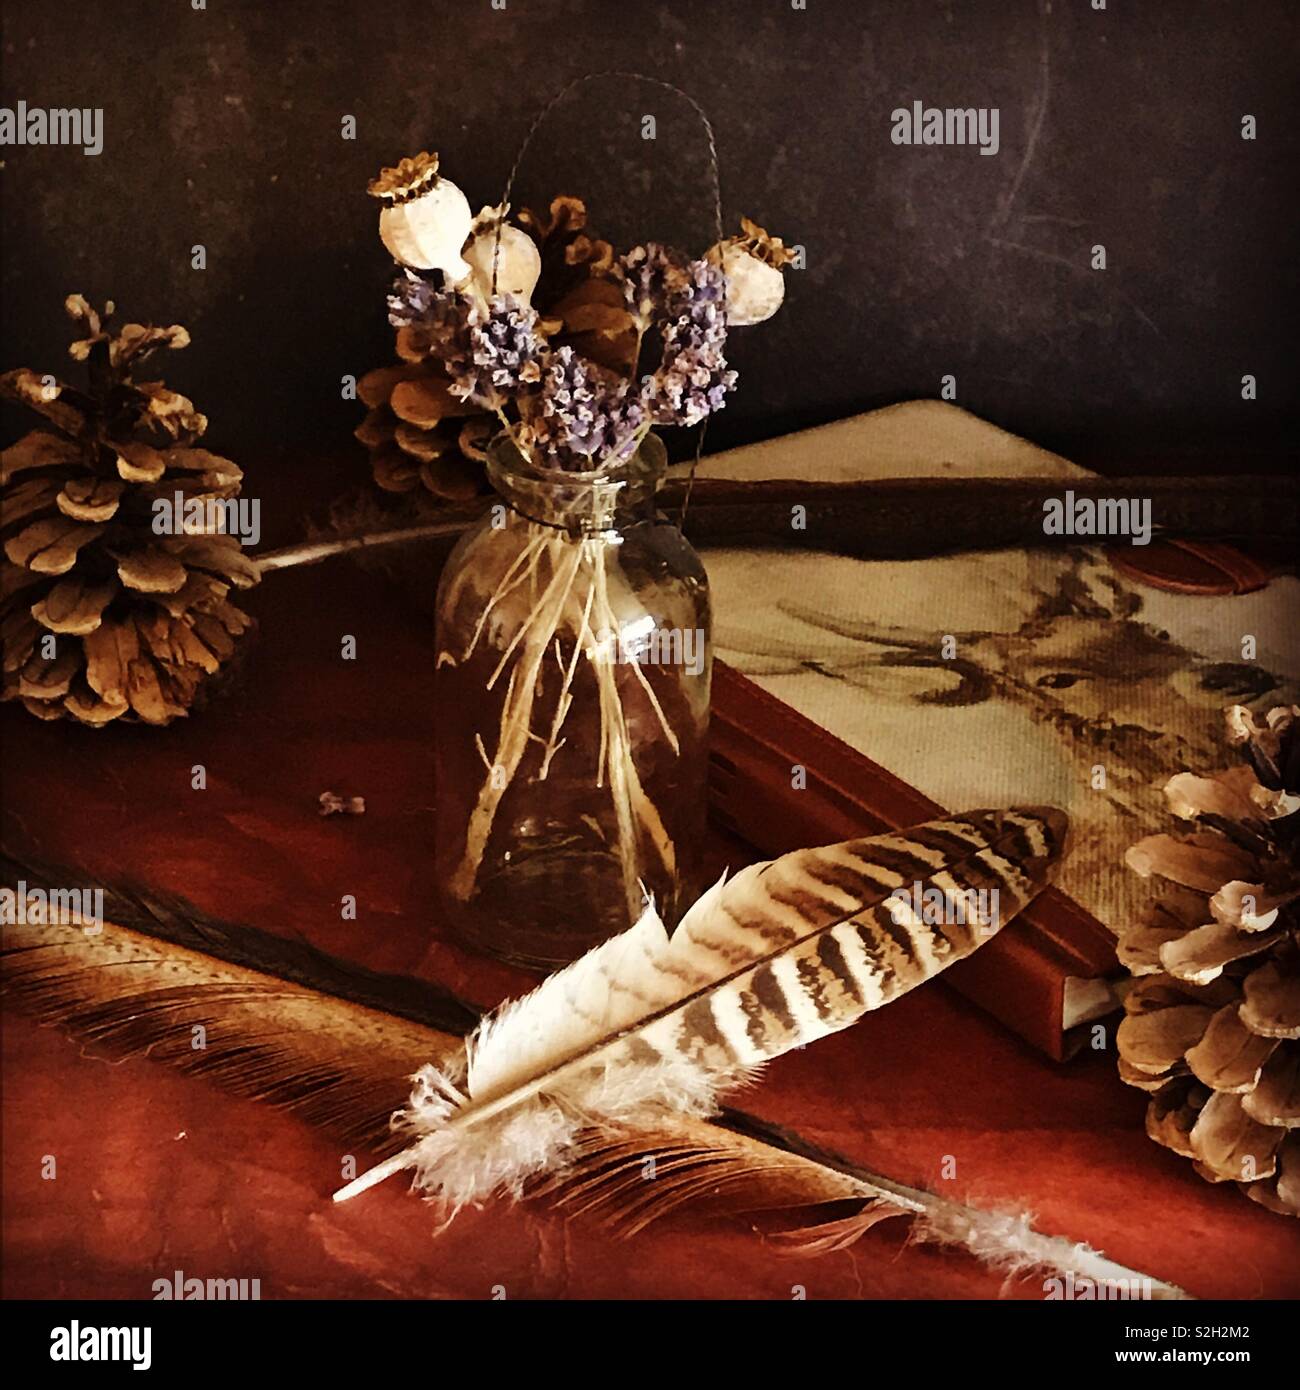 Stilleben mit Fasan Federn und poppyseed Köpfe auf braunem Hintergrund Stockfoto